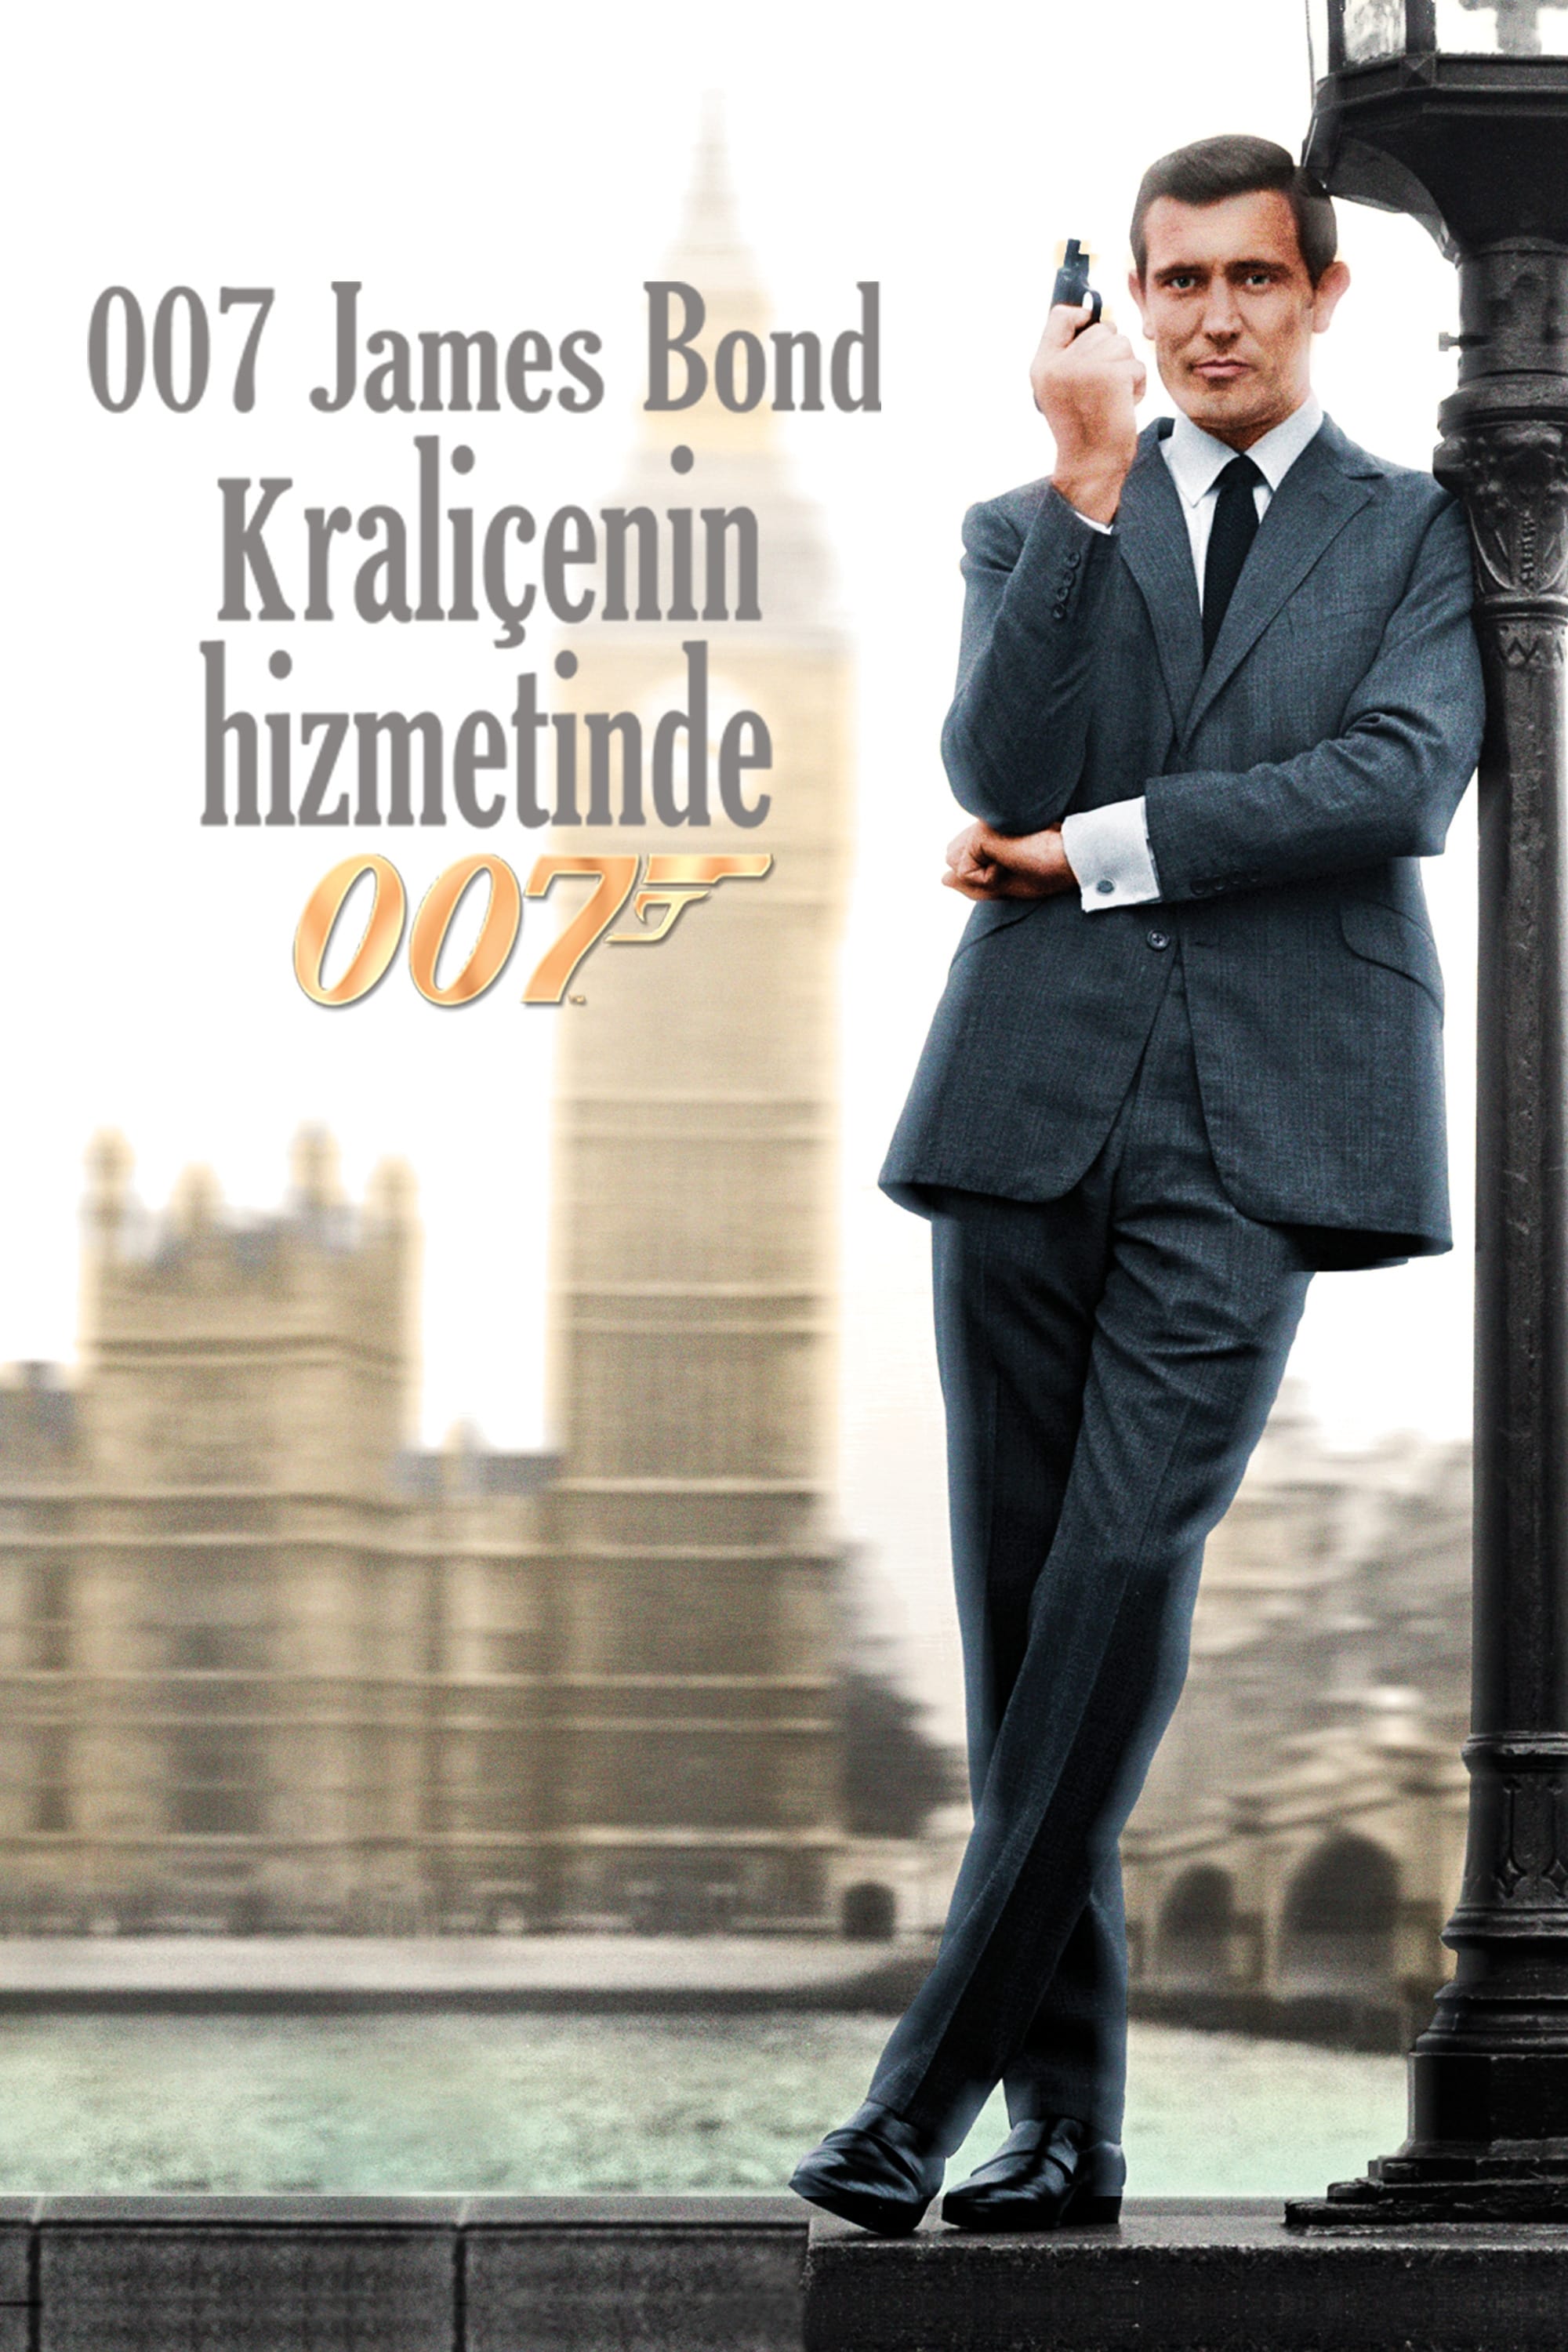 007 James Bond Kraliçenin Hizmetinde